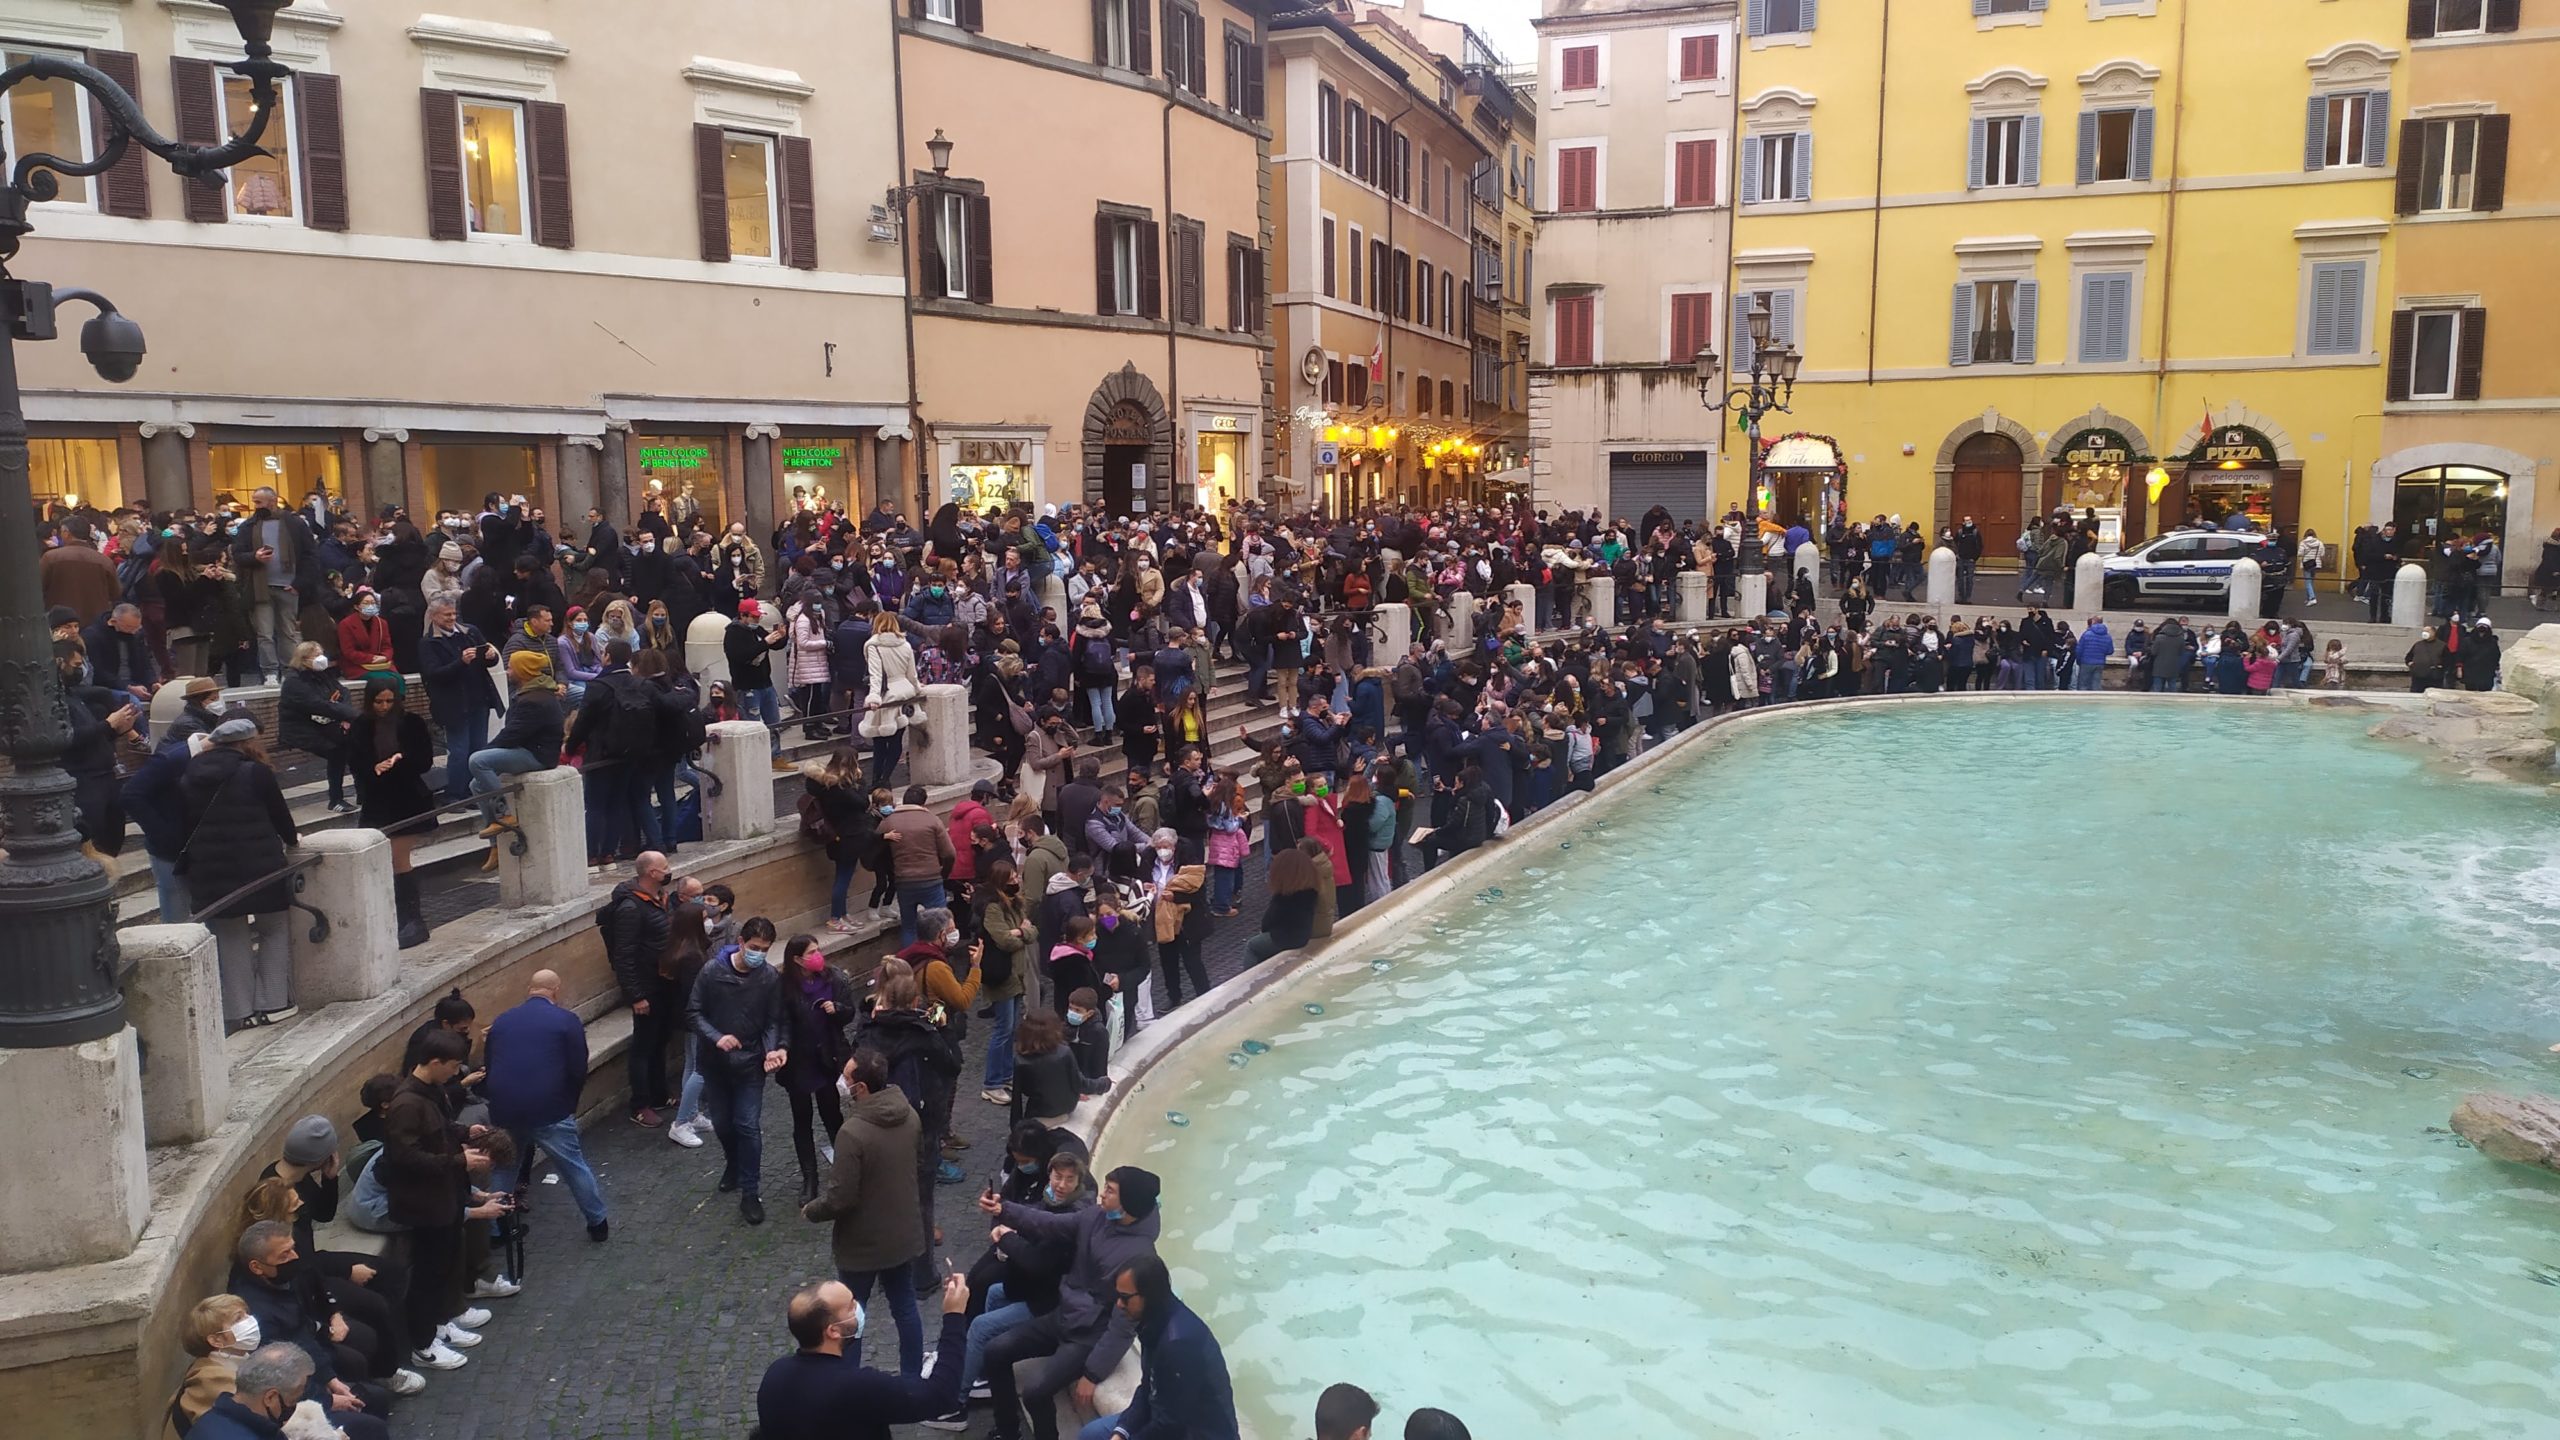 une foule est amassée devant la Fontaine de Trevi